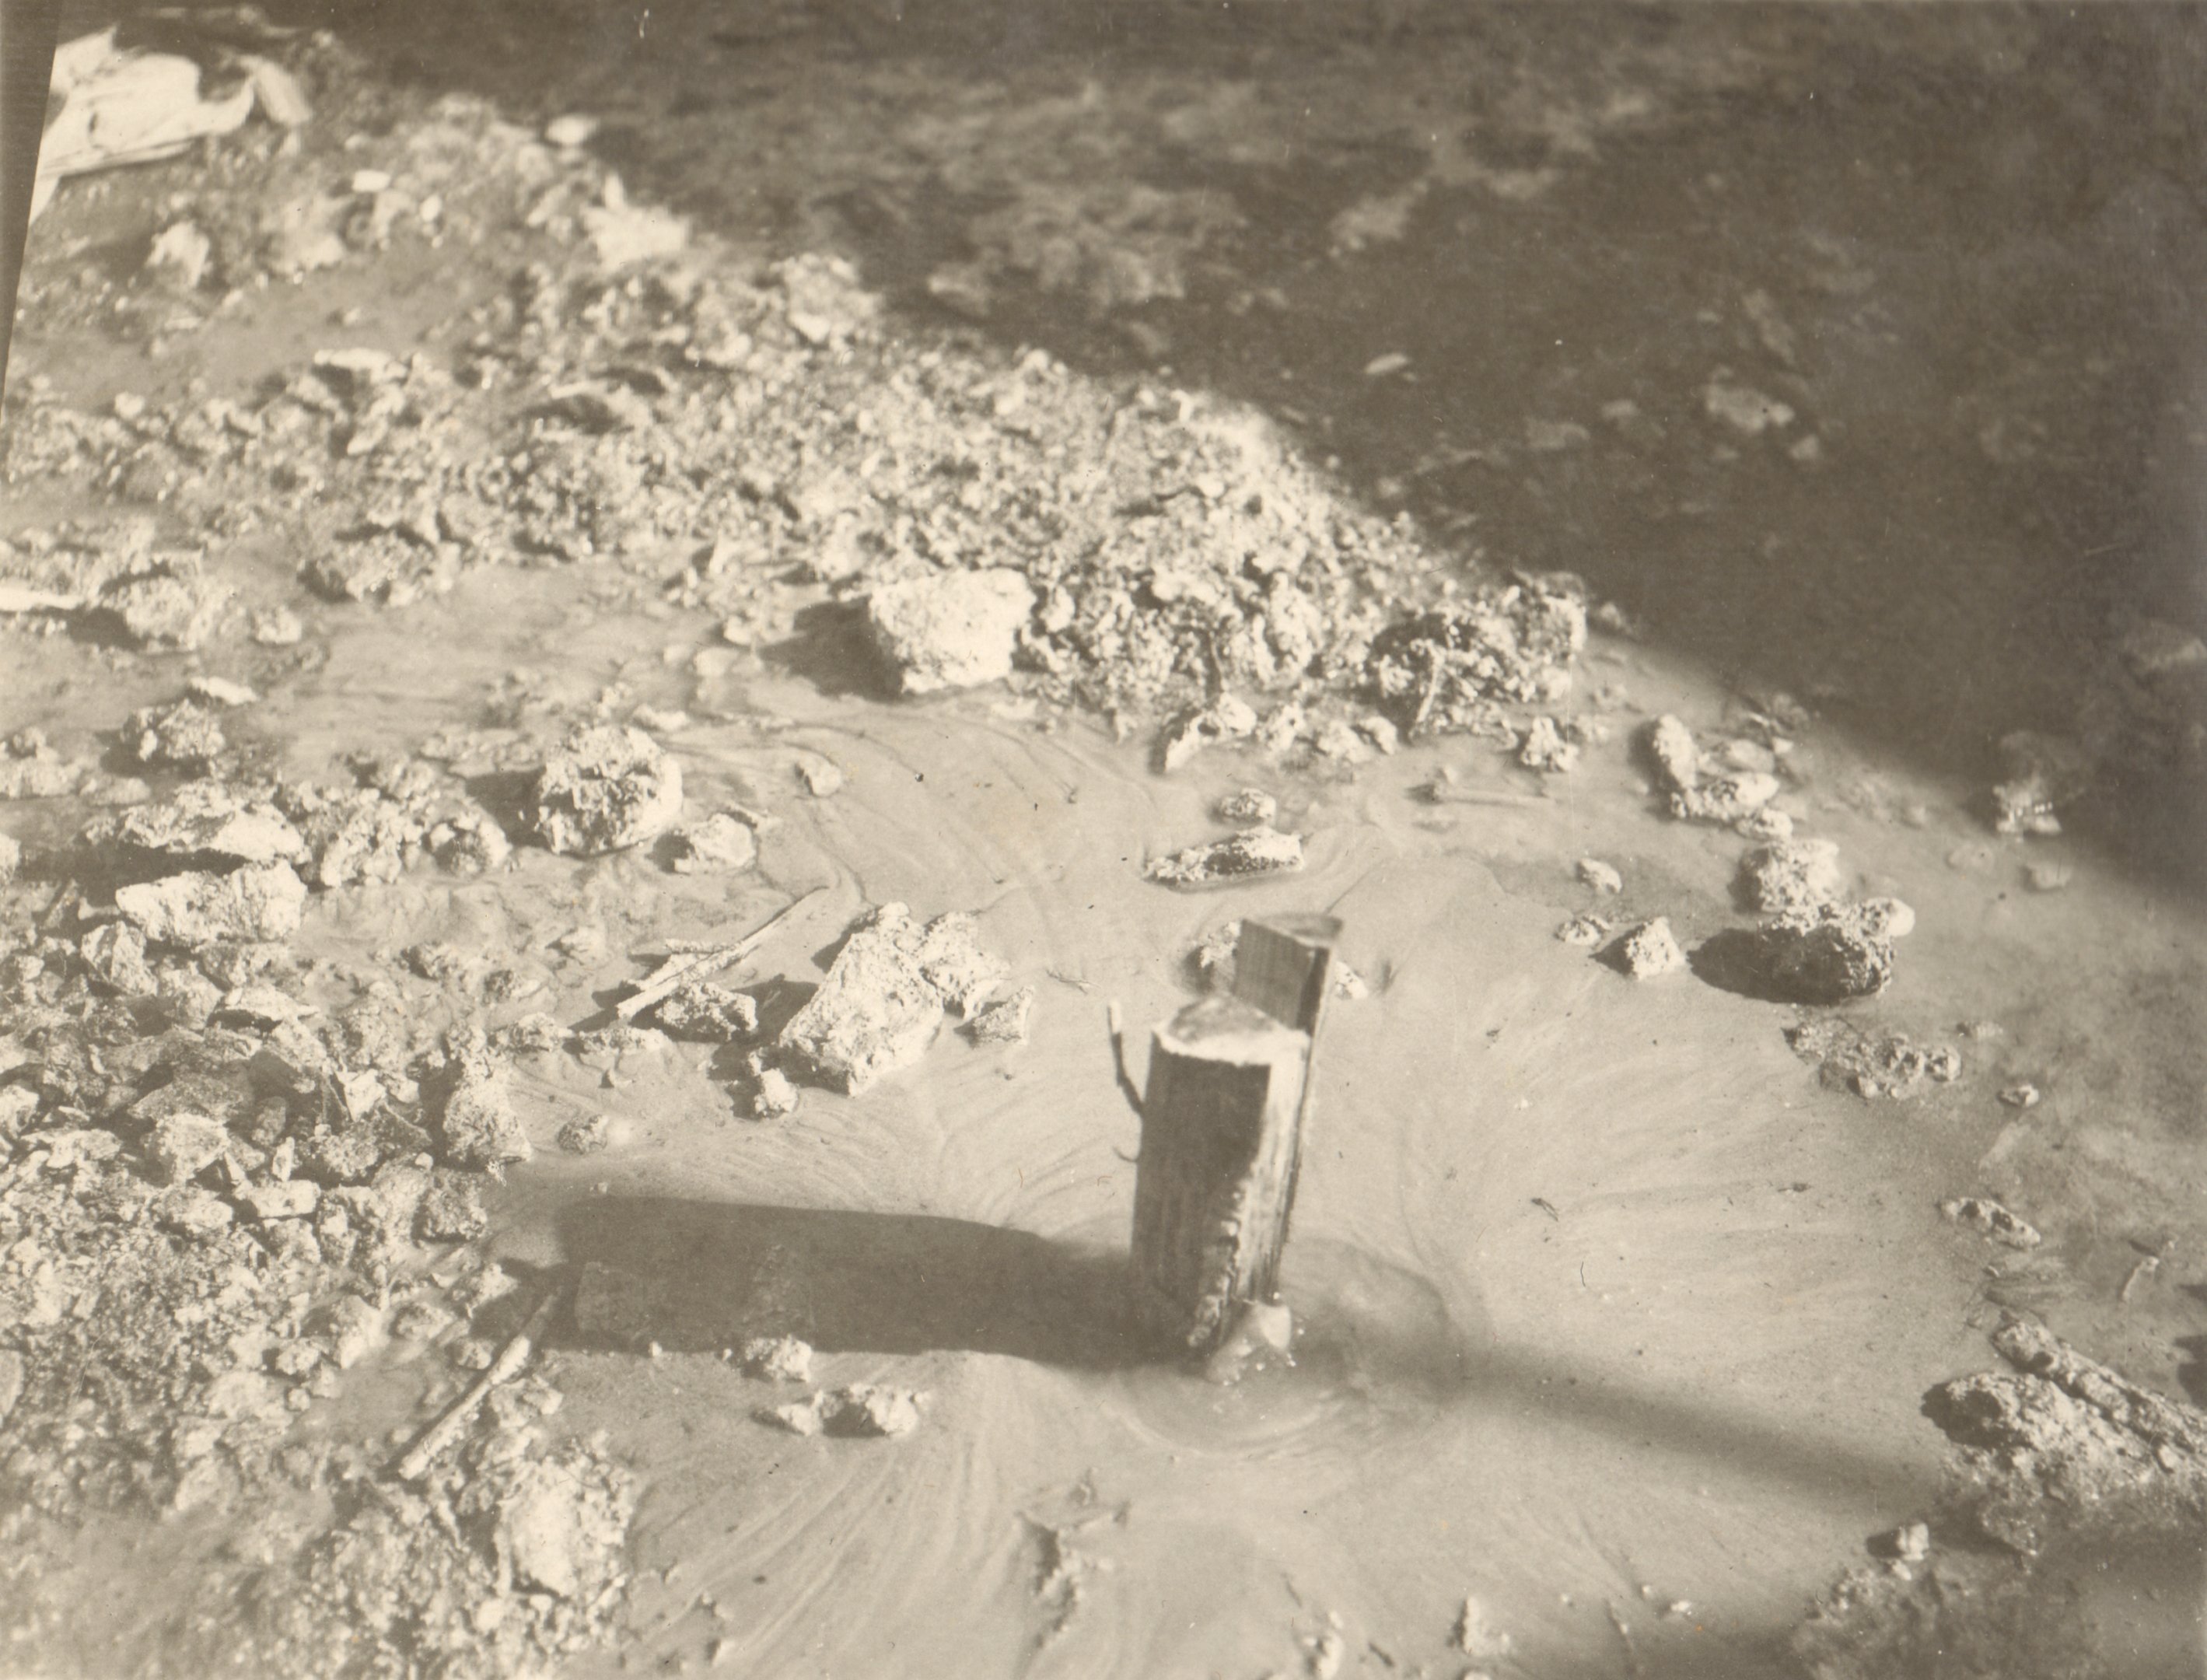 Részlet a munkából. A beton fenékbe fúrt lyukon feltörő iszap (A feltörés fadugóval elfojtva), 1932. február 26. (Magyar Környezetvédelmi és Vízügyi Múzeum - Duna Múzeum CC BY-NC-SA)